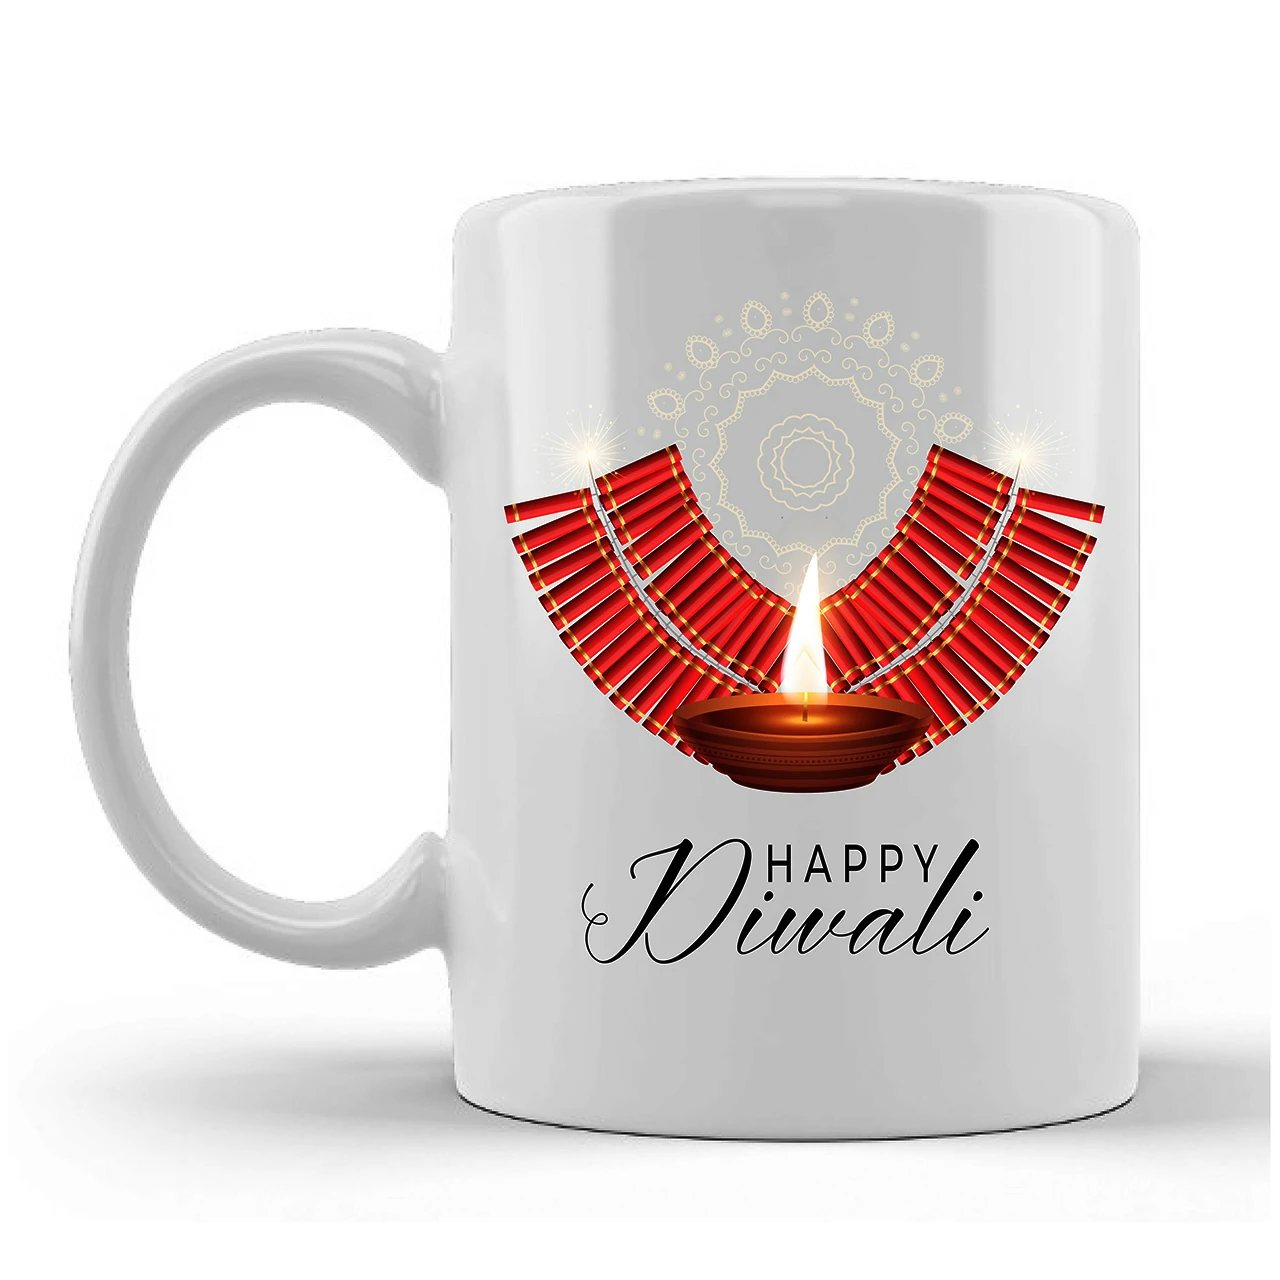 Happy Diwali Printed Ceramic Mug Gifts for | Diwali Gifts, Diwali Gift Items, Diwali Gifts for Friends, Diwali Gifts for Friends and Family, Gifts for Diwali (Design 8)